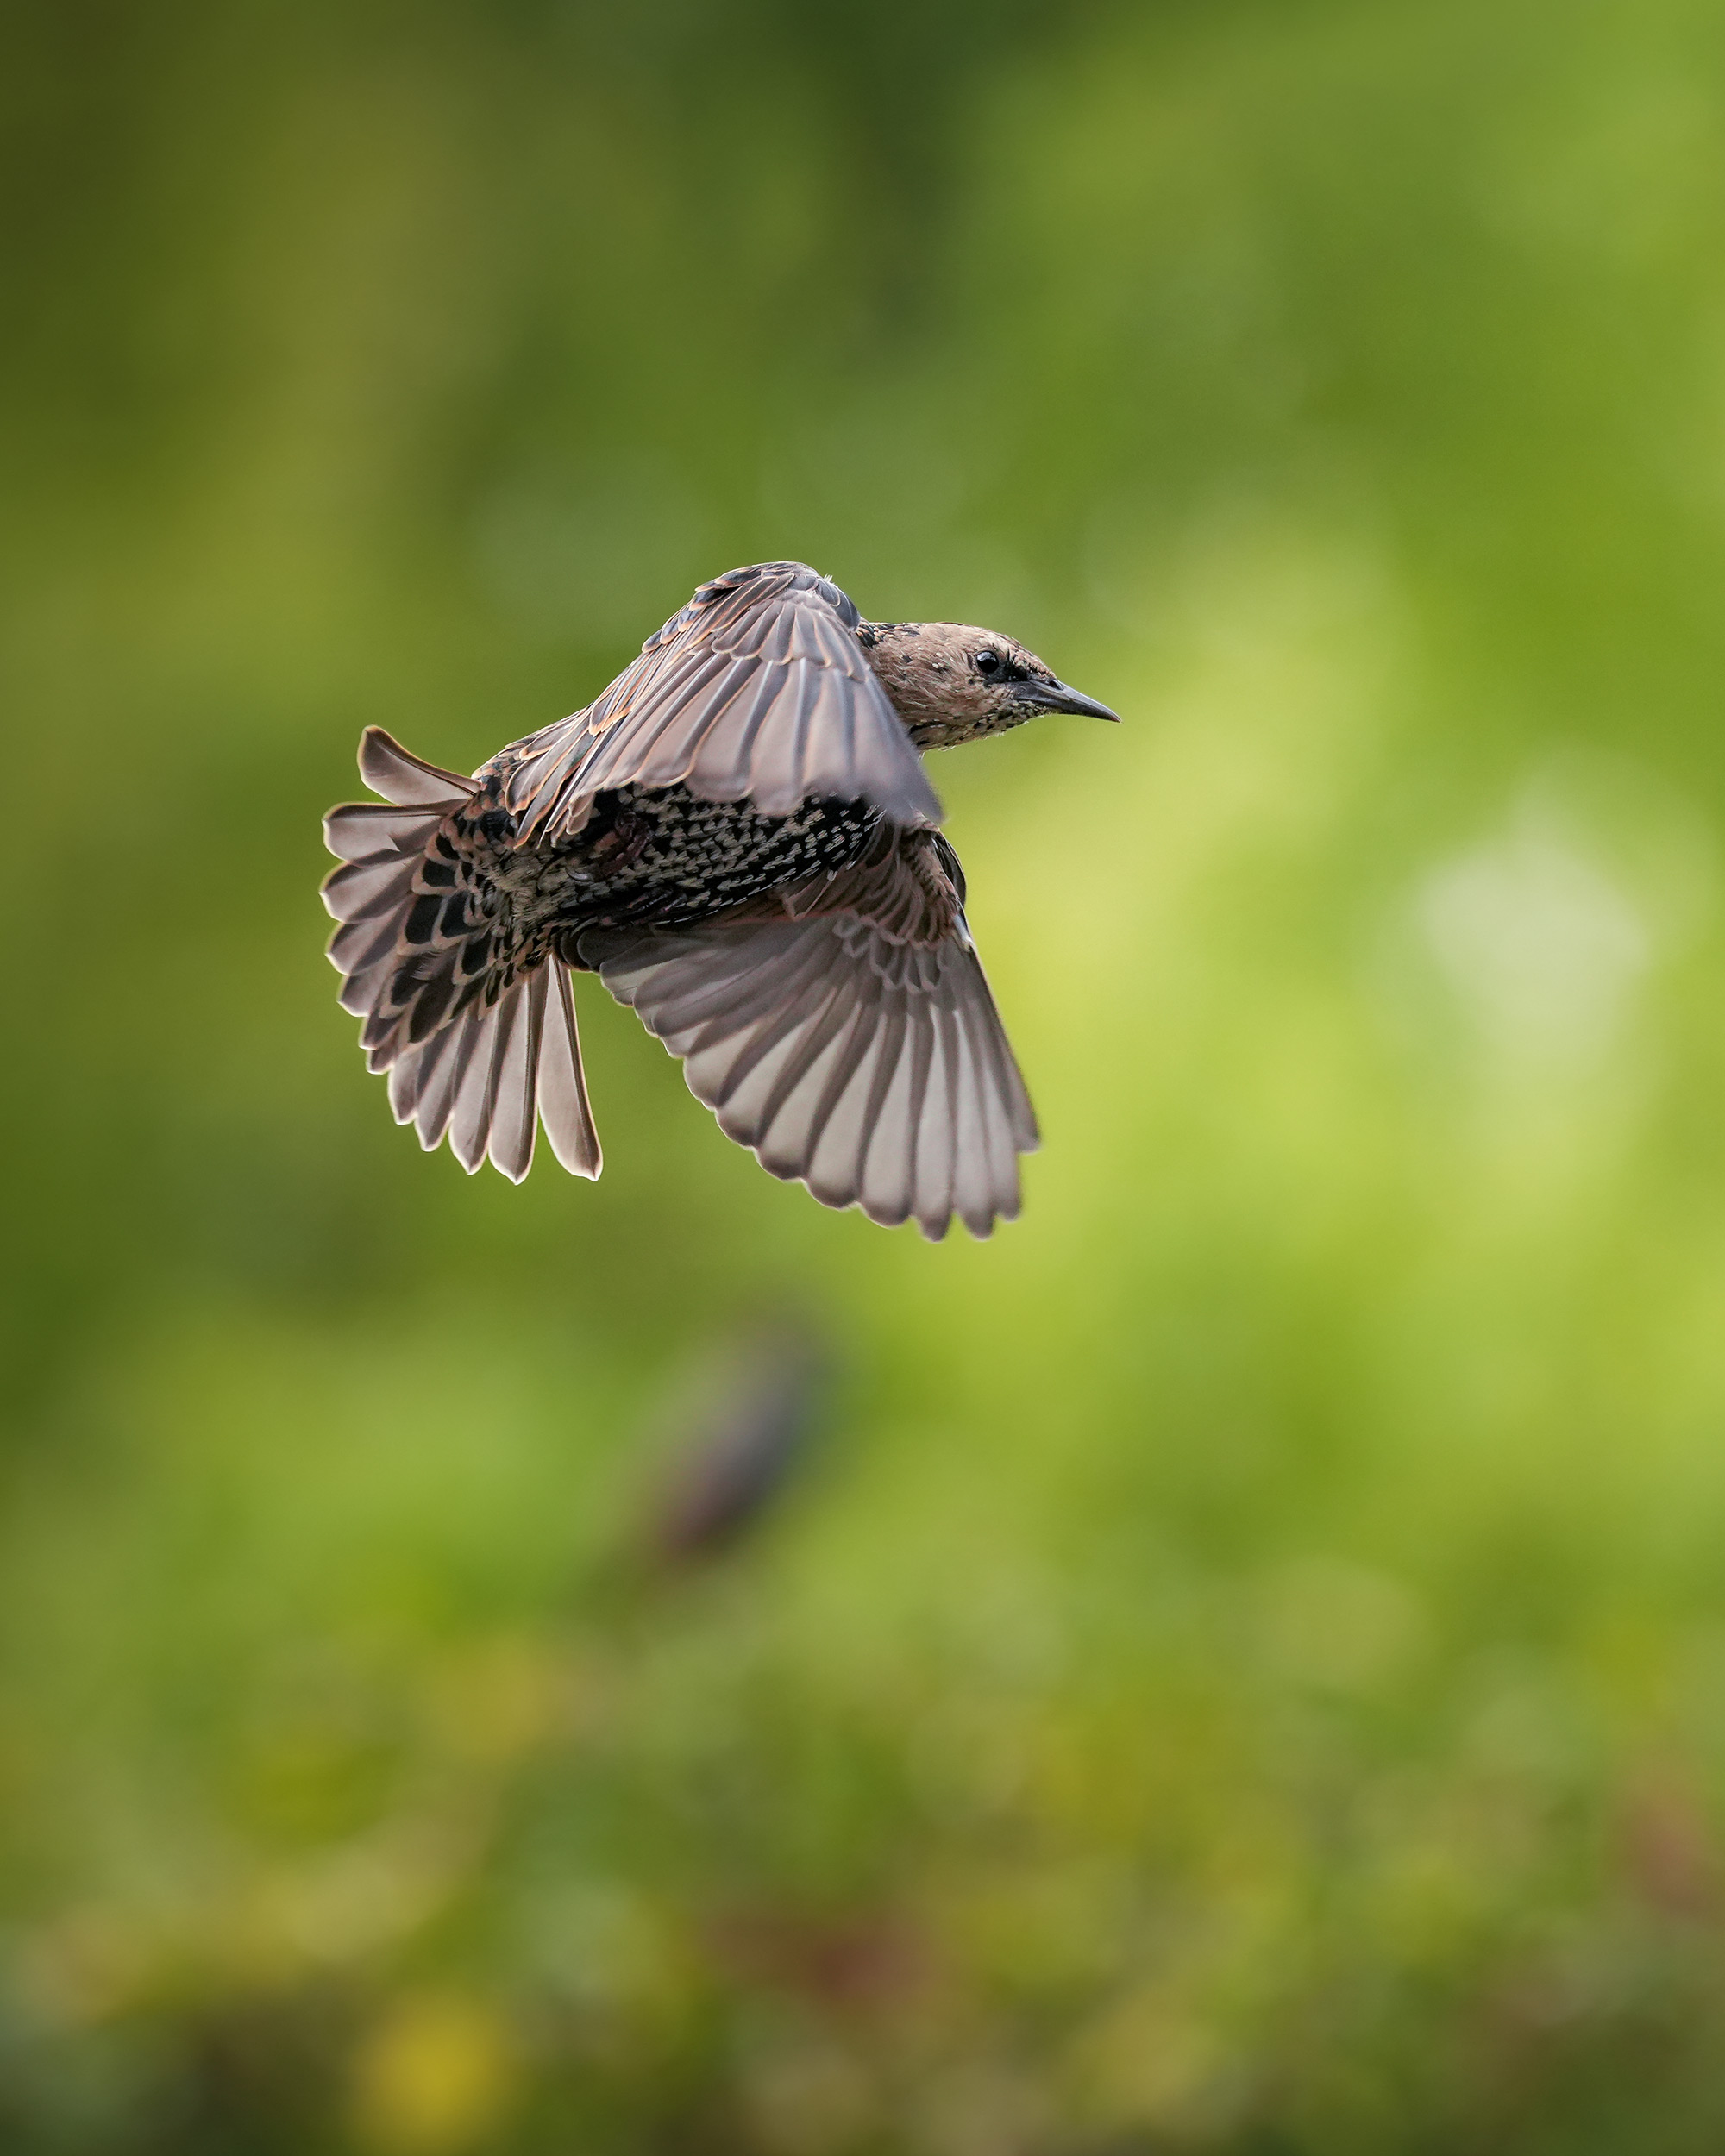 a-brown-bird-in-mid-flight.jpg